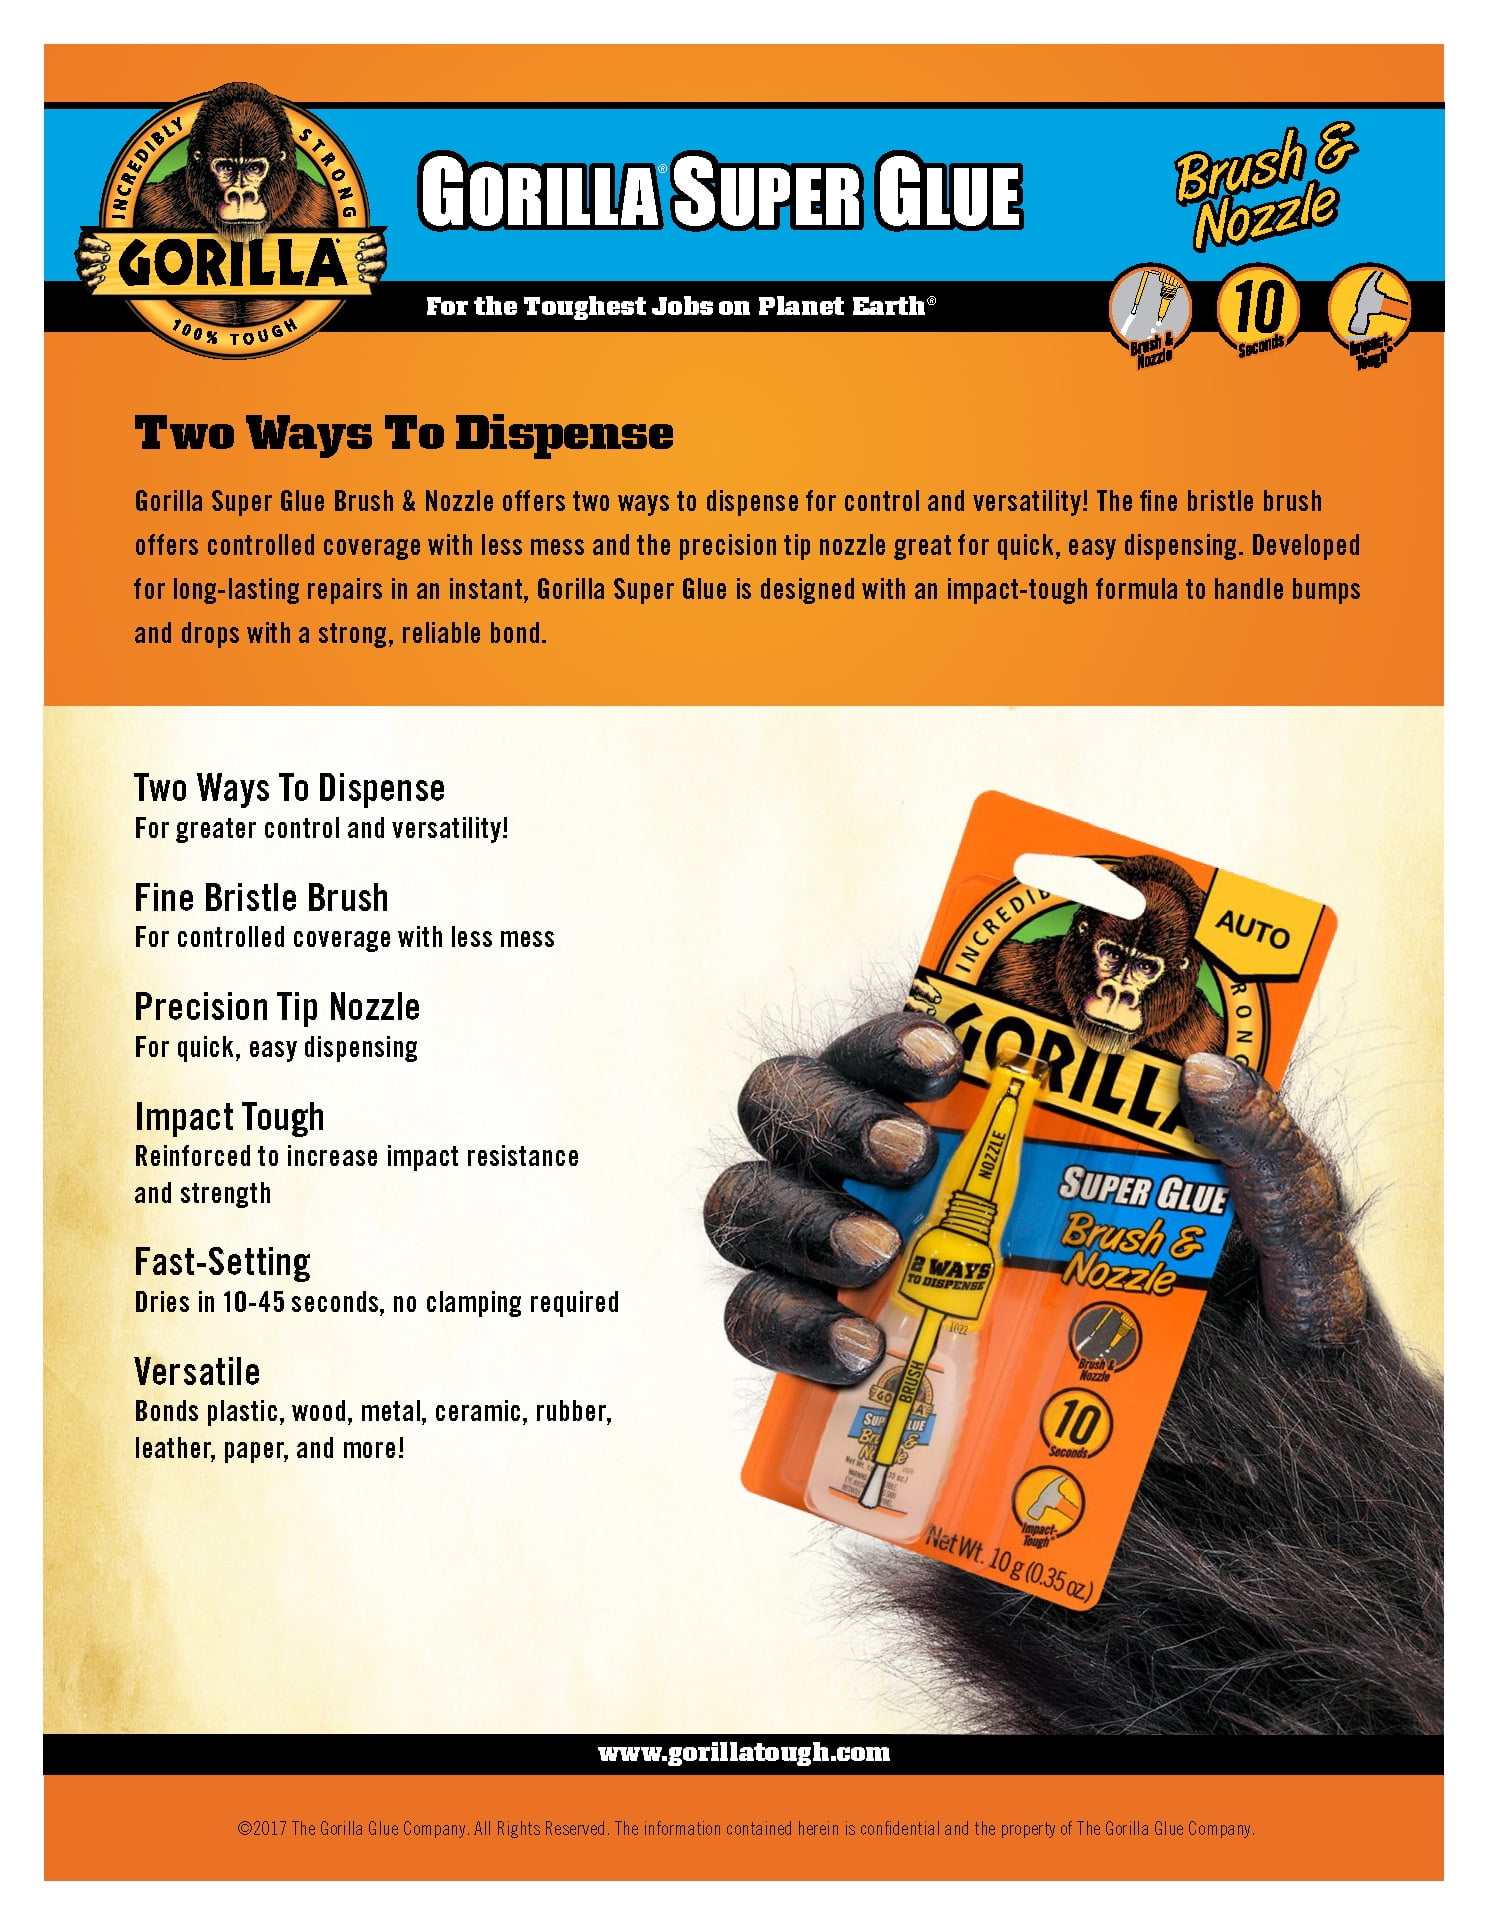 Gorilla Super Glue Brush and Nozzle 10g (10-Pack)